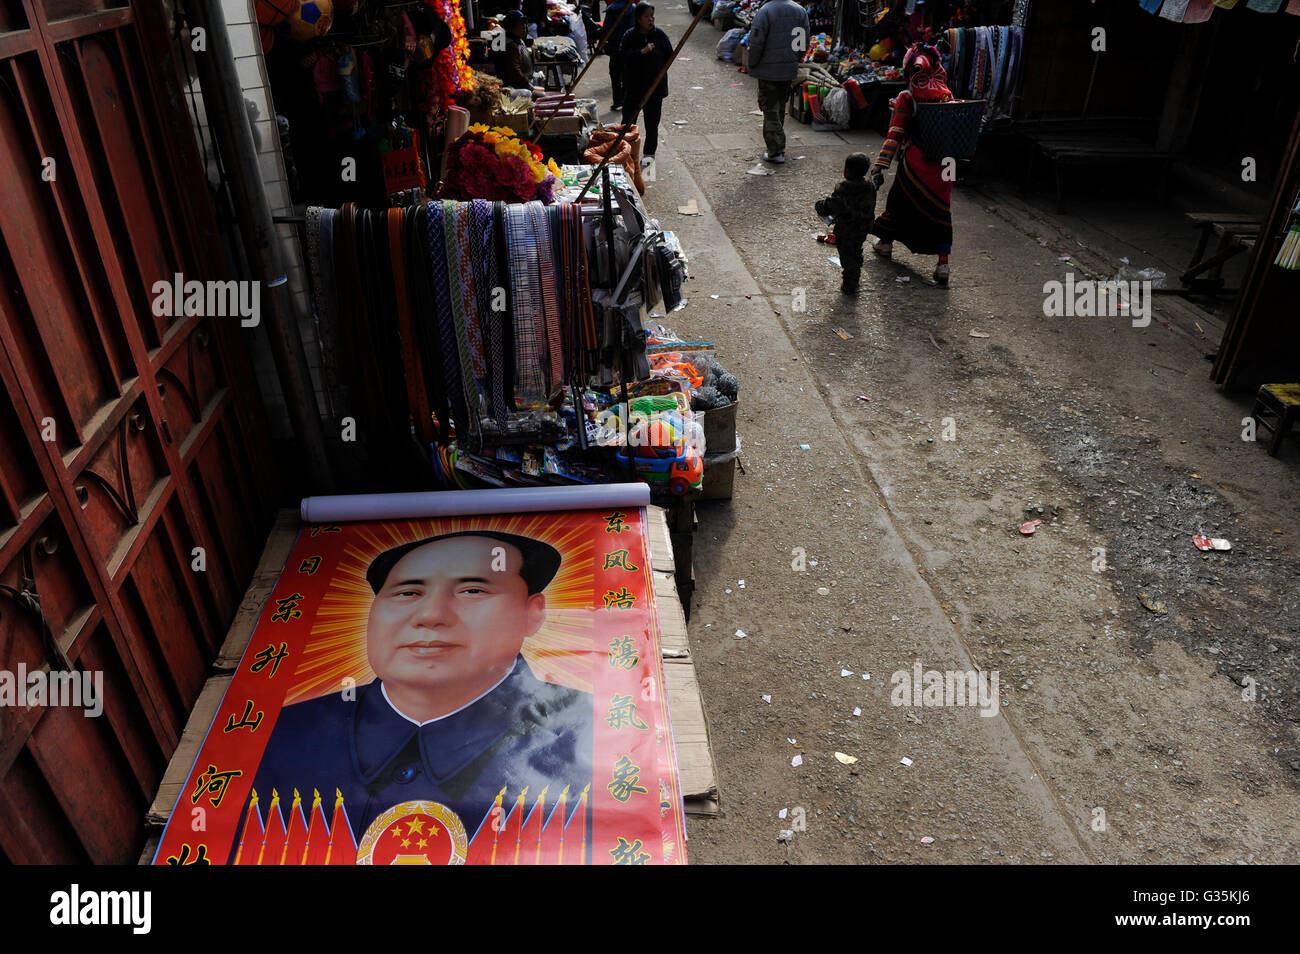 Chine Yunnan, Yongningxiang, accueil de la minorité ethnique Mosuo qui sont bouddhistes, poster de Mao Zedong au marché / Chine Yunnan, Yongningxiang, Heimat der ethnischen Minderheit Mosuo Mosuo, die sind Buddhisten Banque D'Images